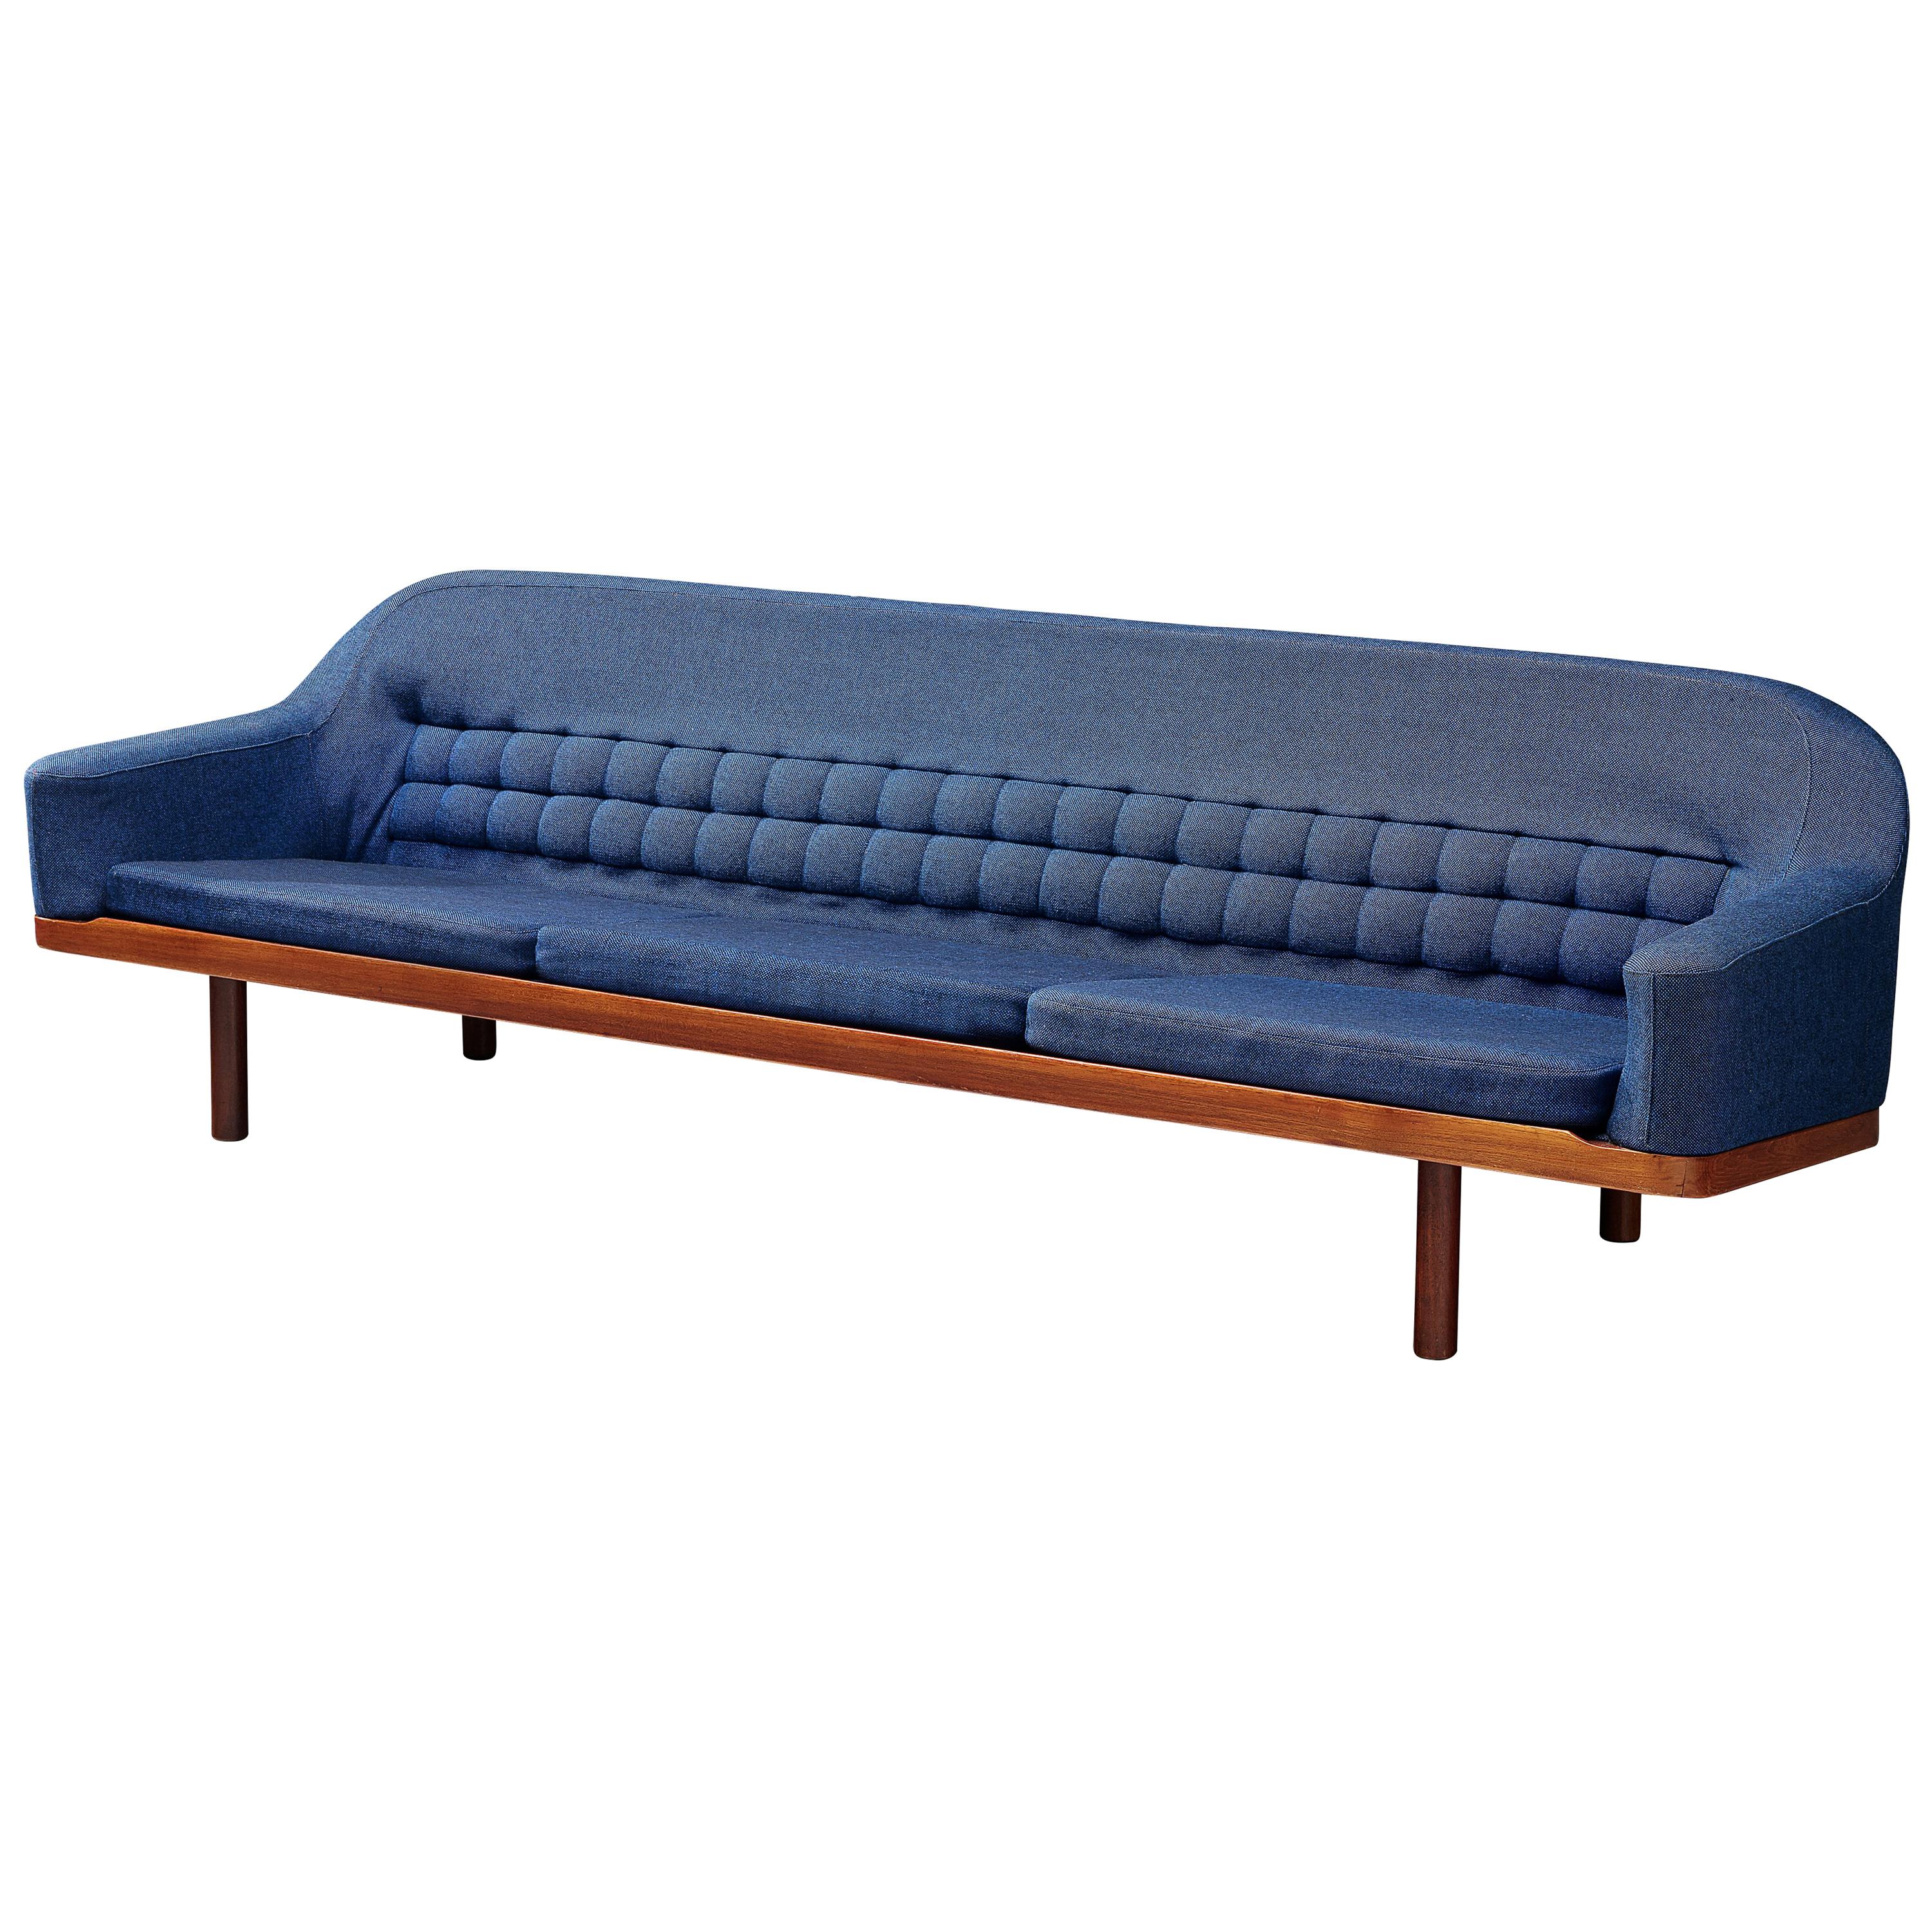 Arne Halvorsen Sofa Model 2010 in Teak and Blue Fabric Upholstery